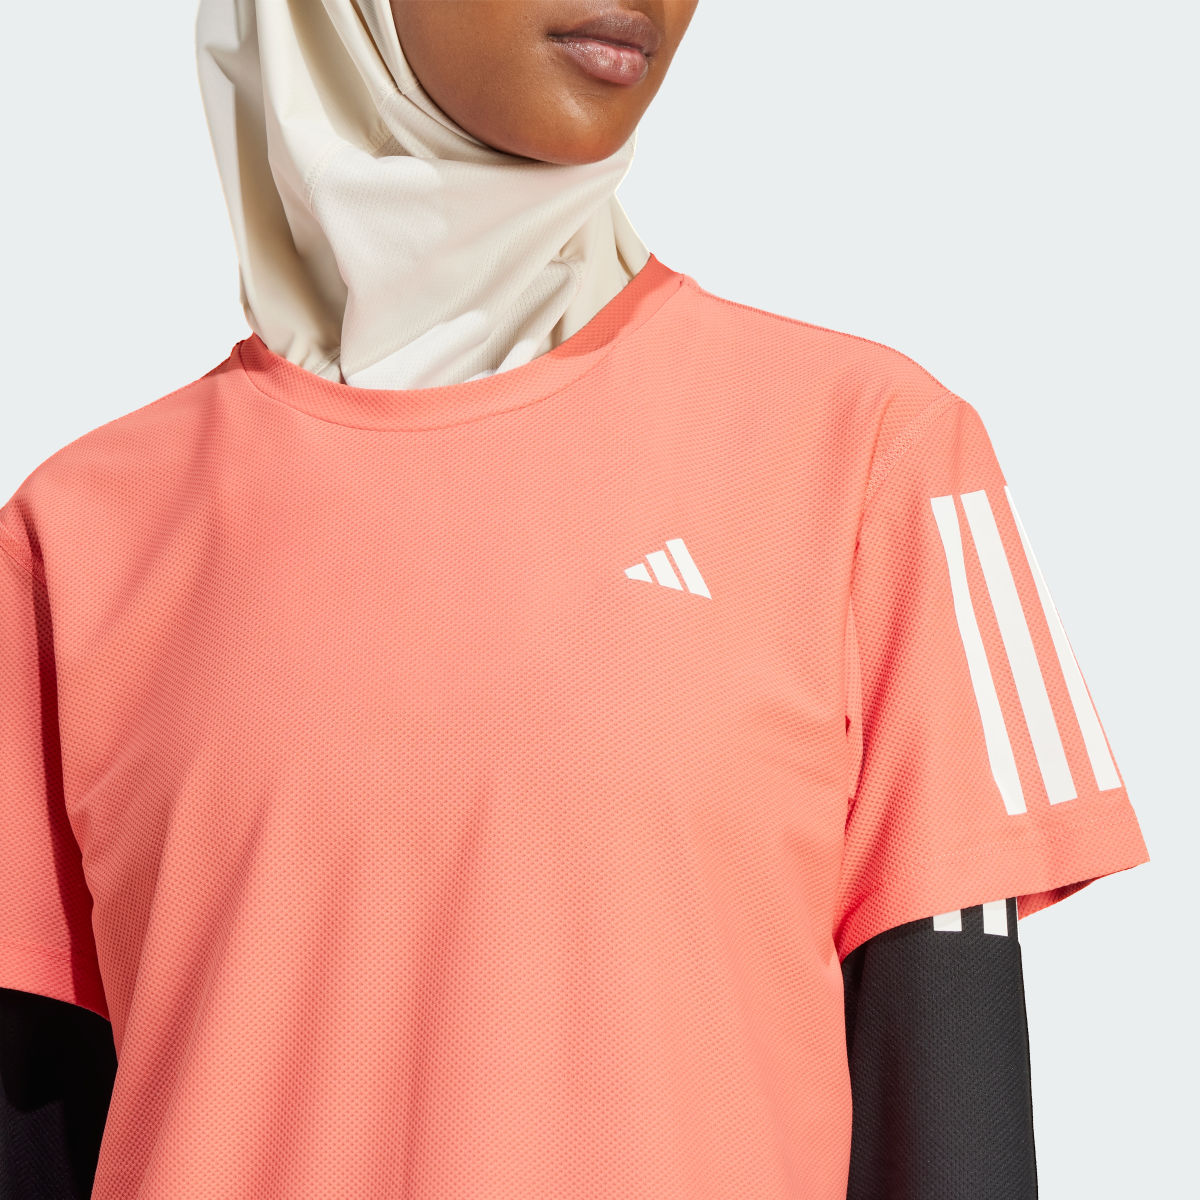 Adidas Camiseta Own The Run. 6